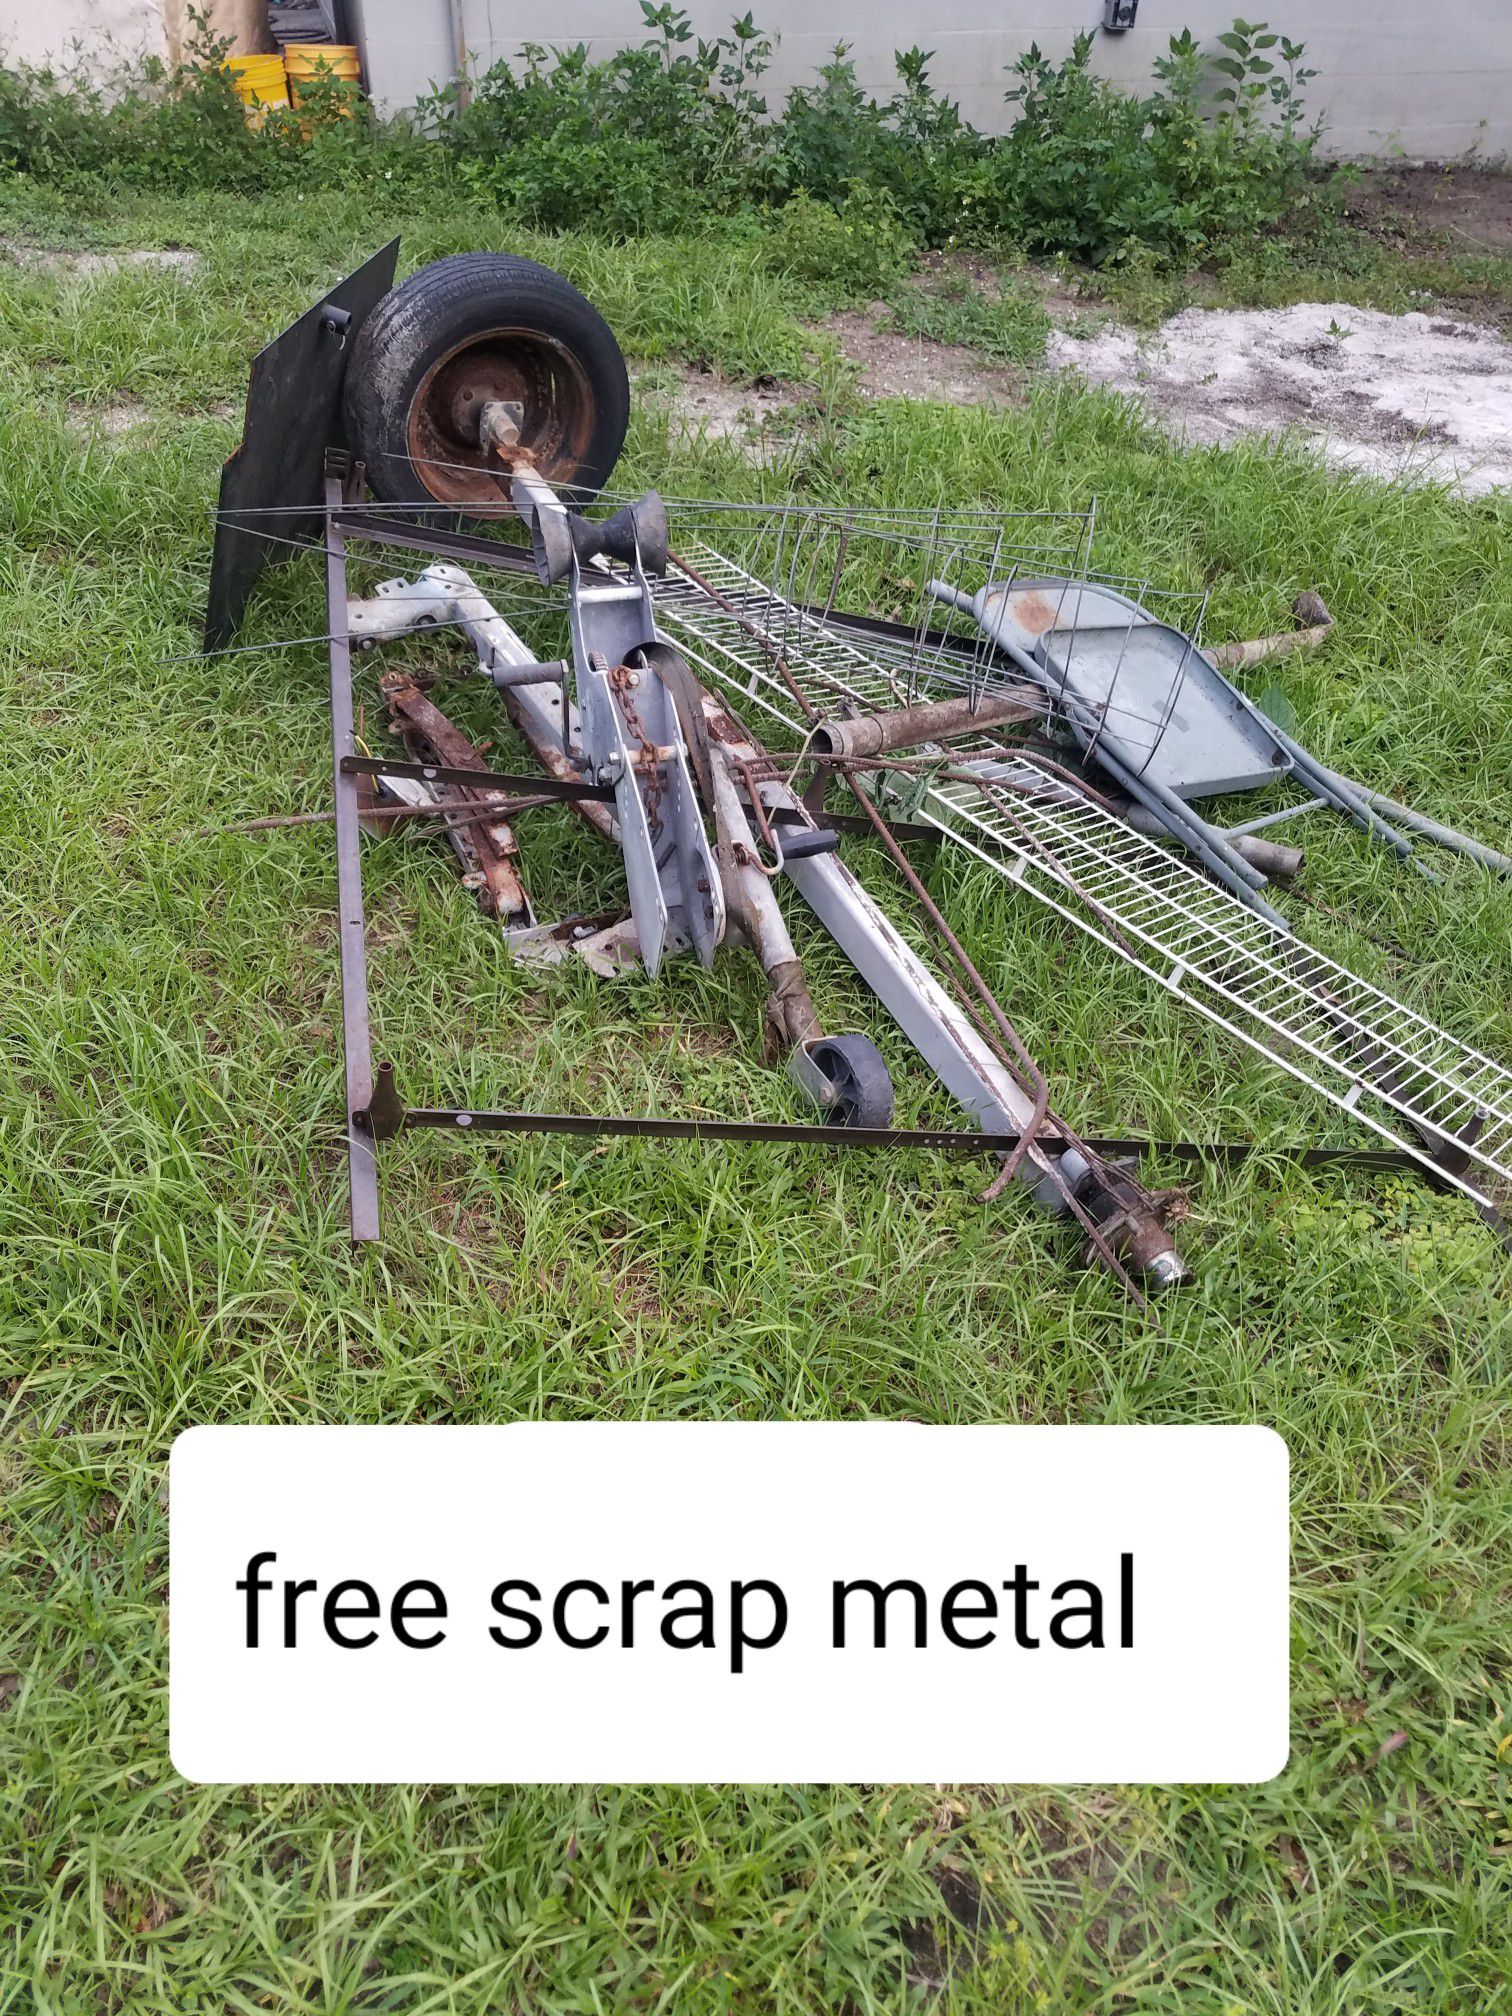 Free scrap metal